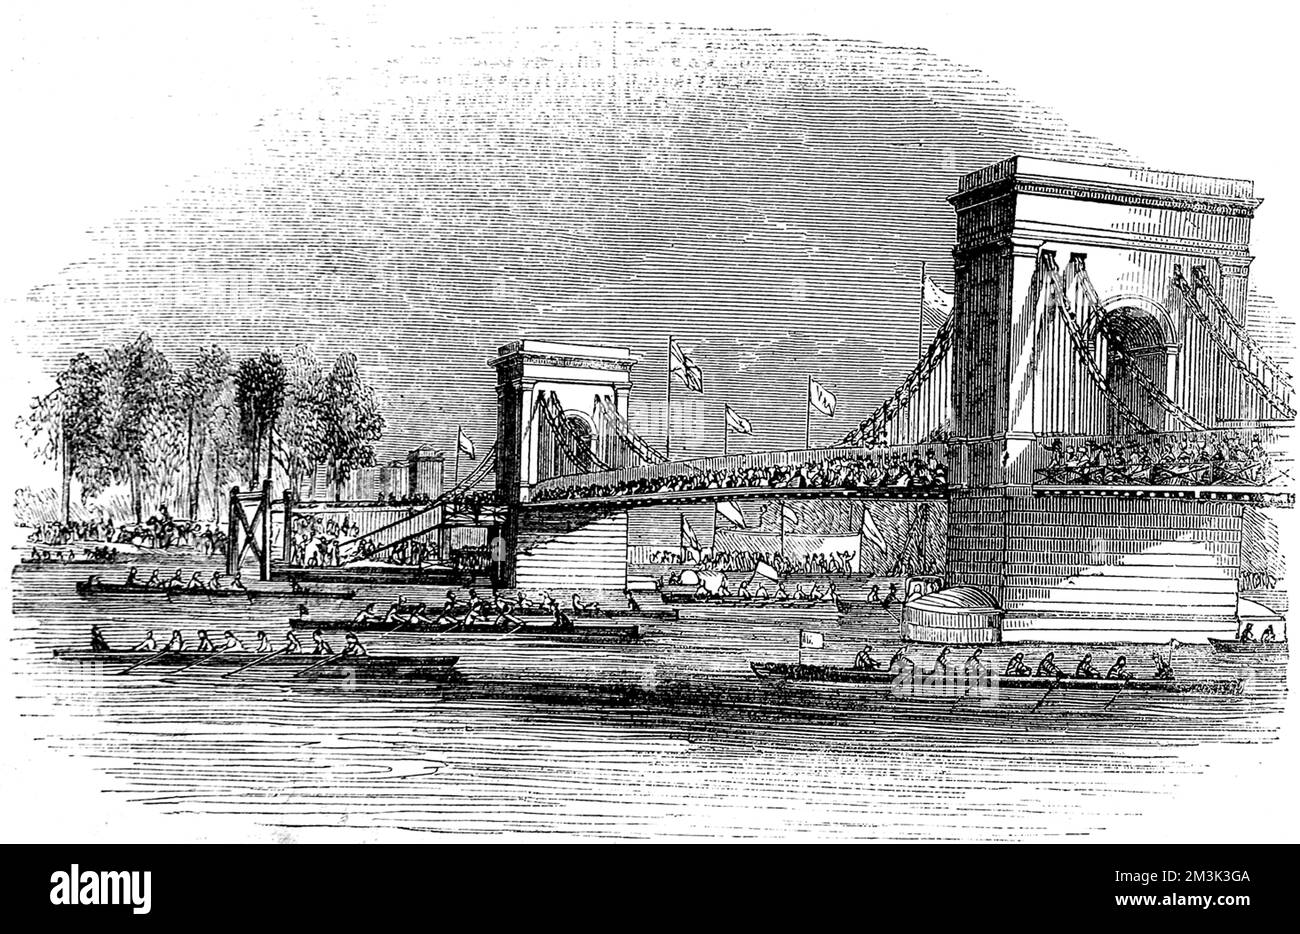 Barcos de remo, participando en la Regata del Támesis de 1843, pasando por el puente colgante Hammersmith. 1843 Foto de stock